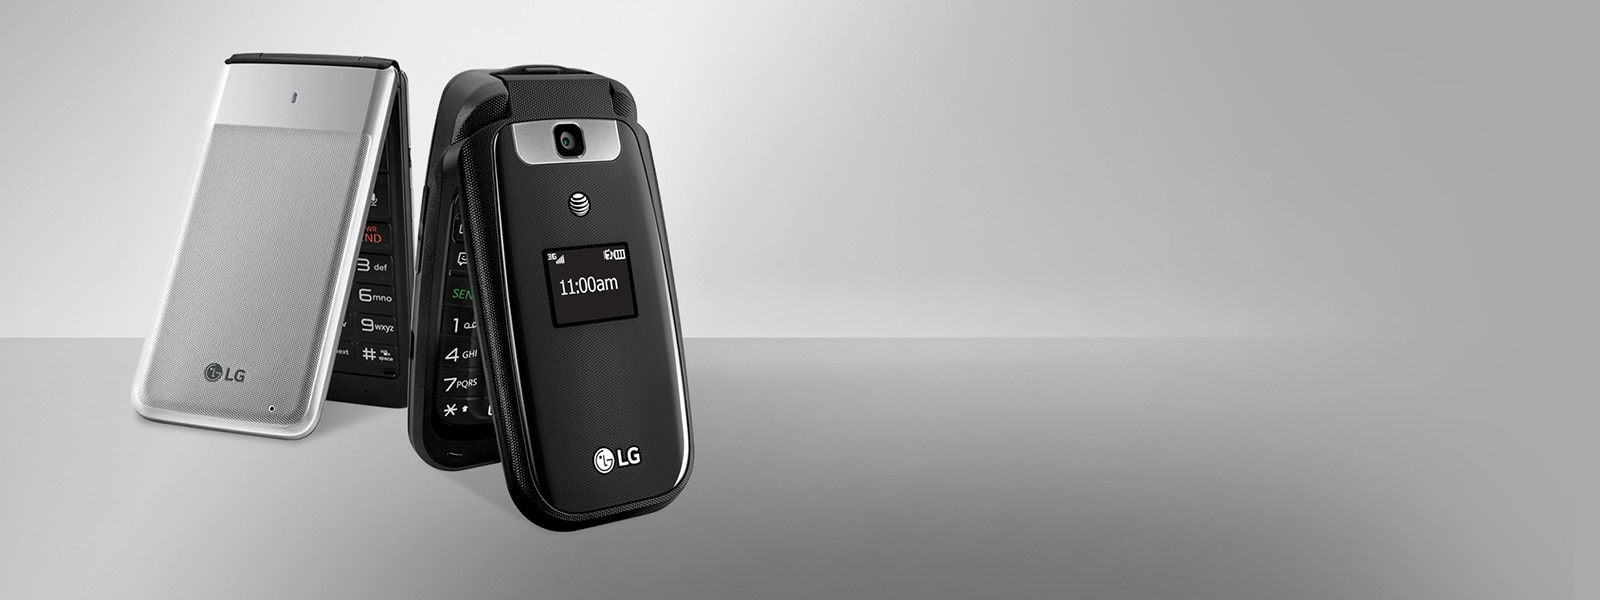 LG Flip Phones1